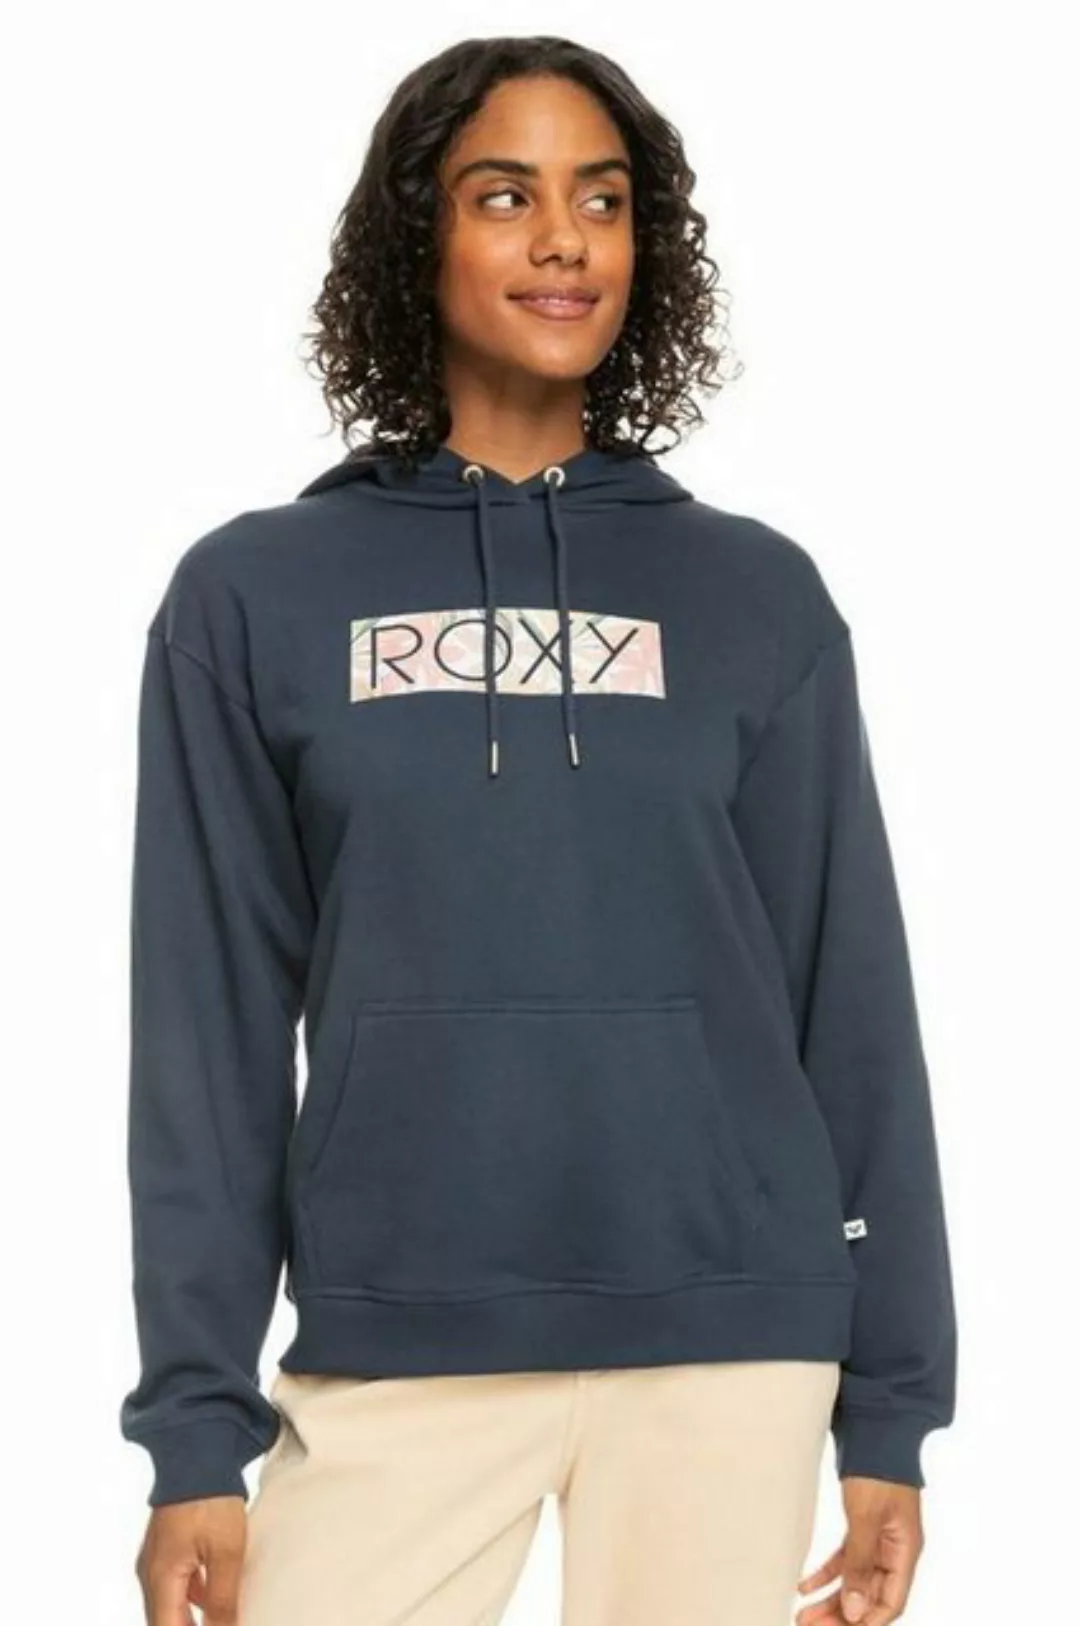 Roxy Fleeceshirt günstig online kaufen